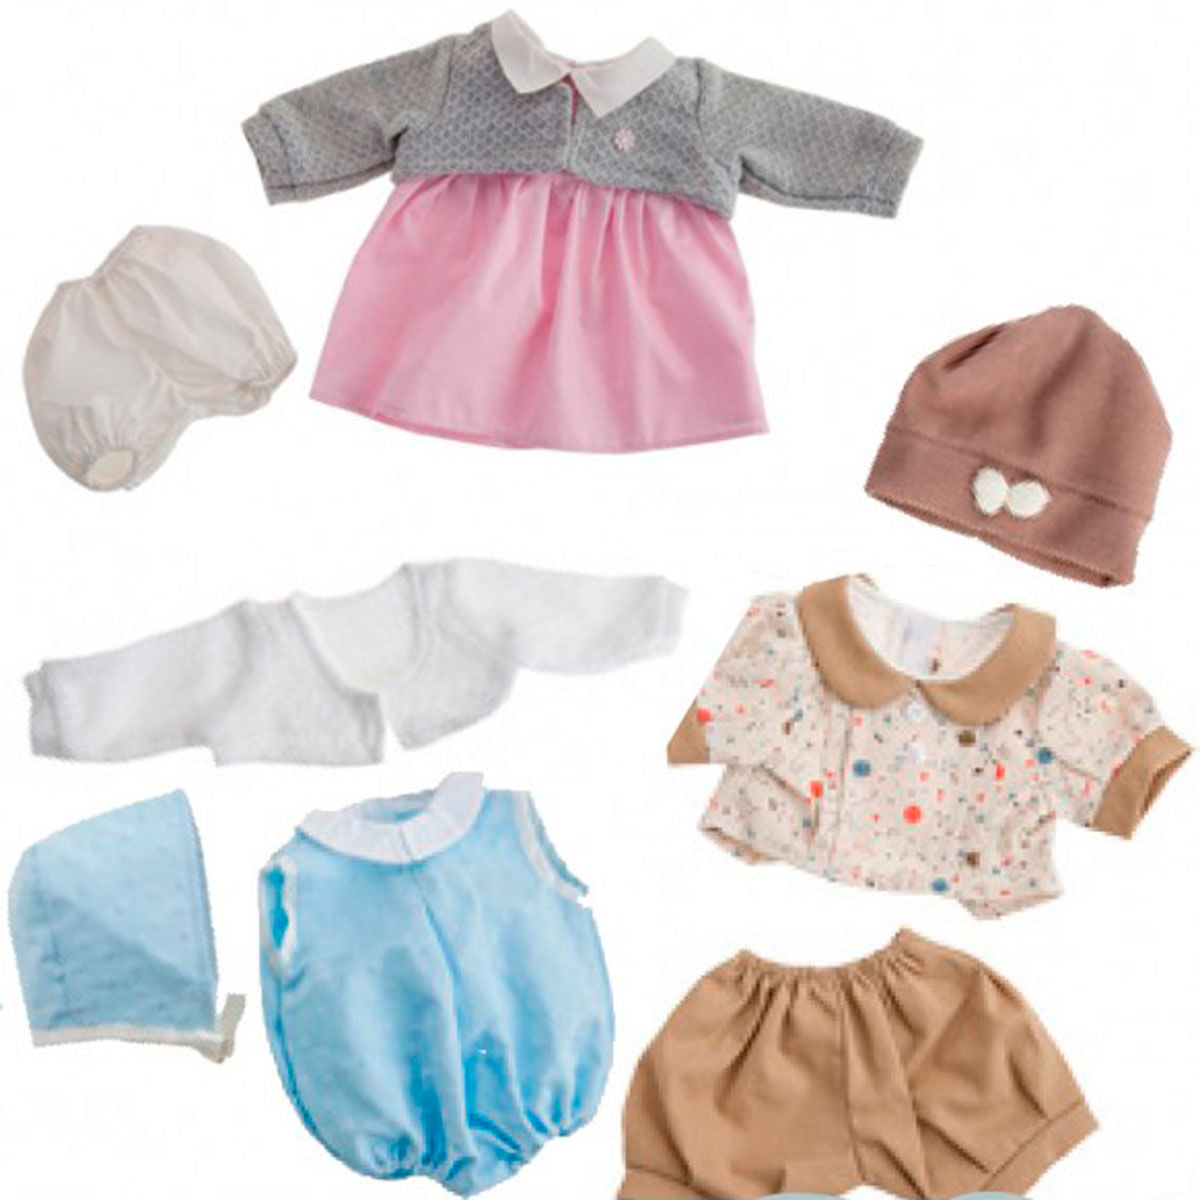 Mejores accesorios y prendas de ropa para bebés reborn - Antonio Juan  Muñecas